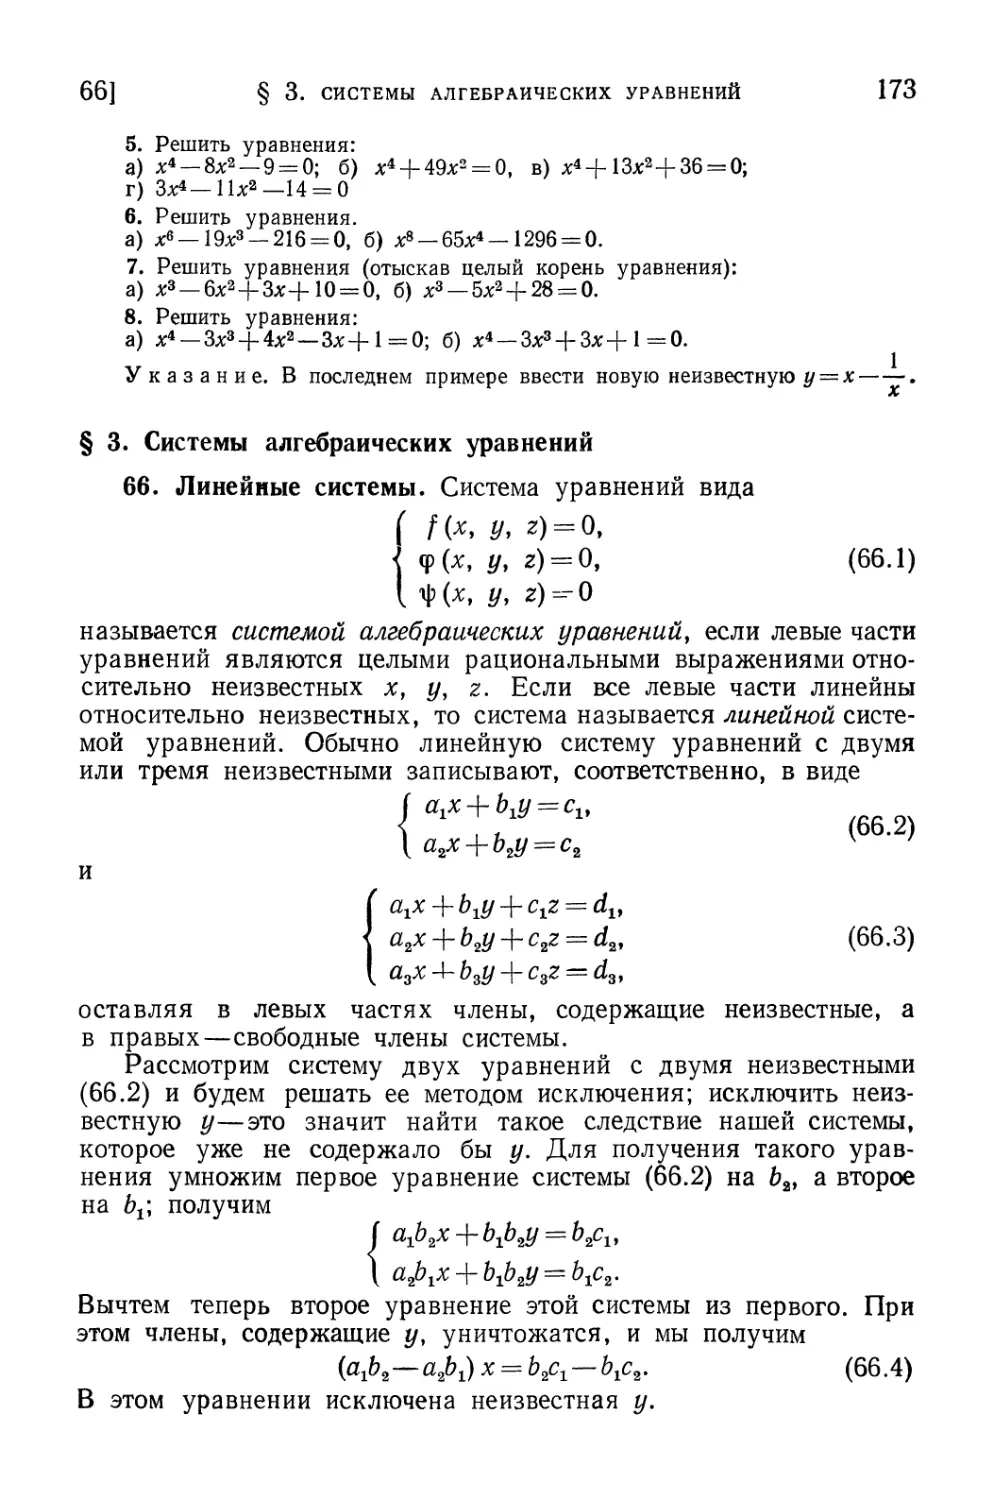 § 3. Системы алгебраических уравнений